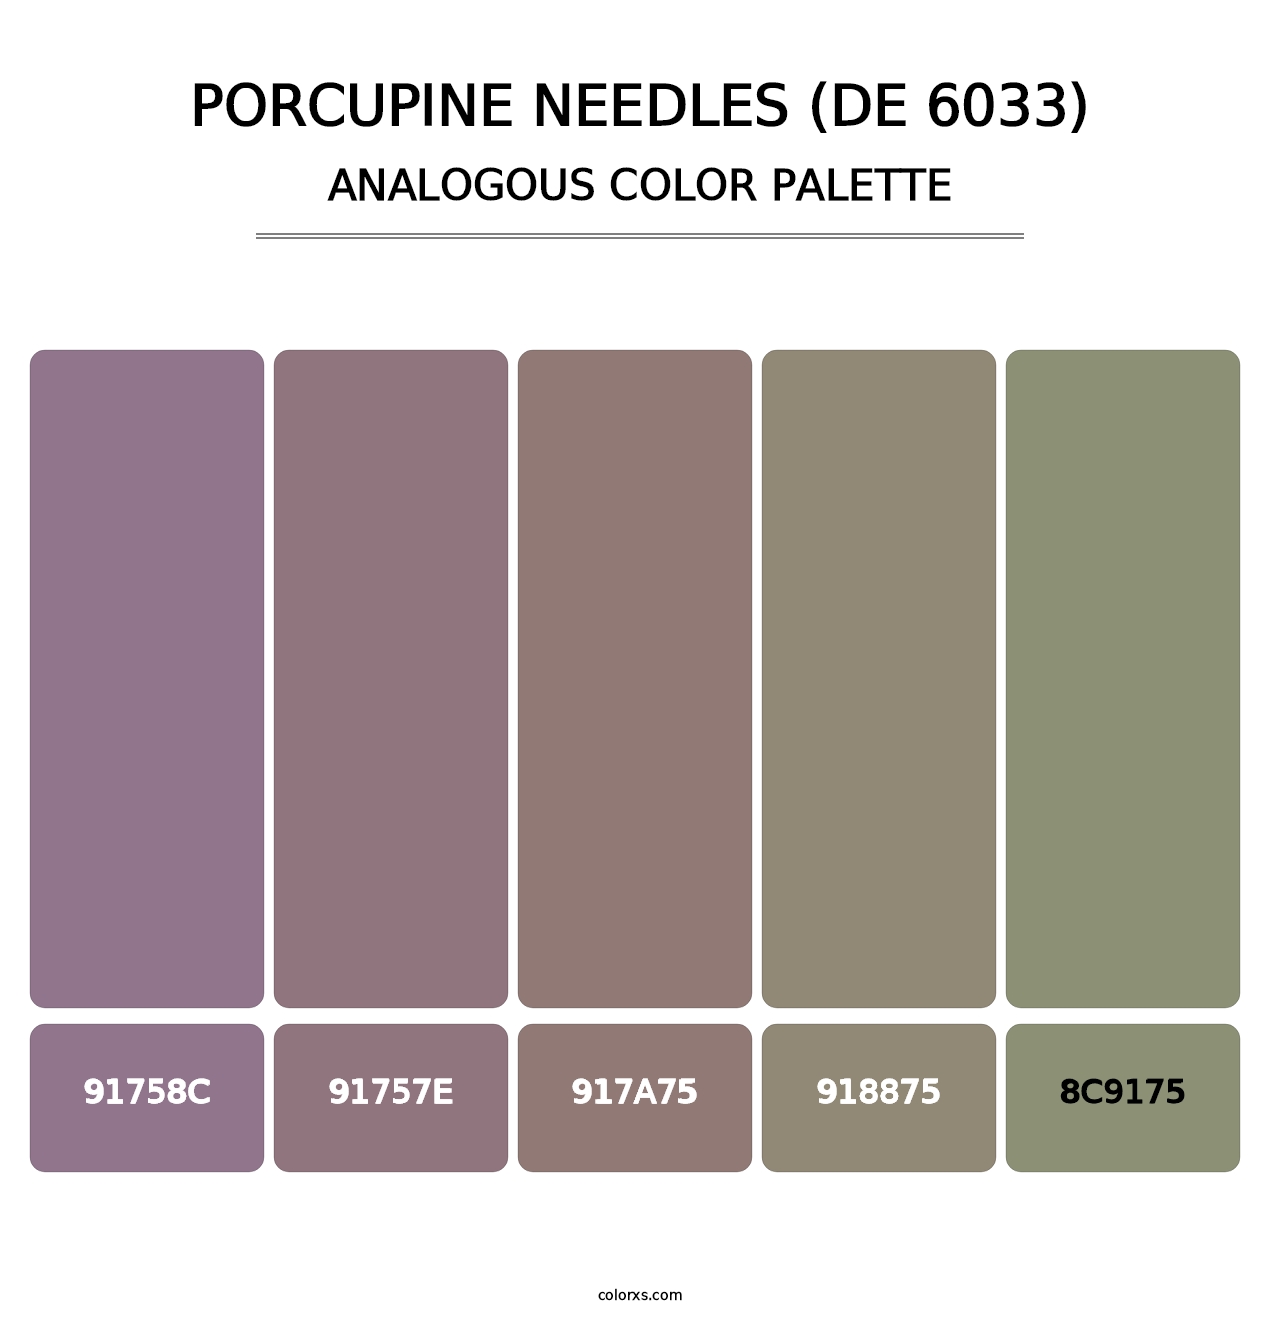 Porcupine Needles (DE 6033) - Analogous Color Palette